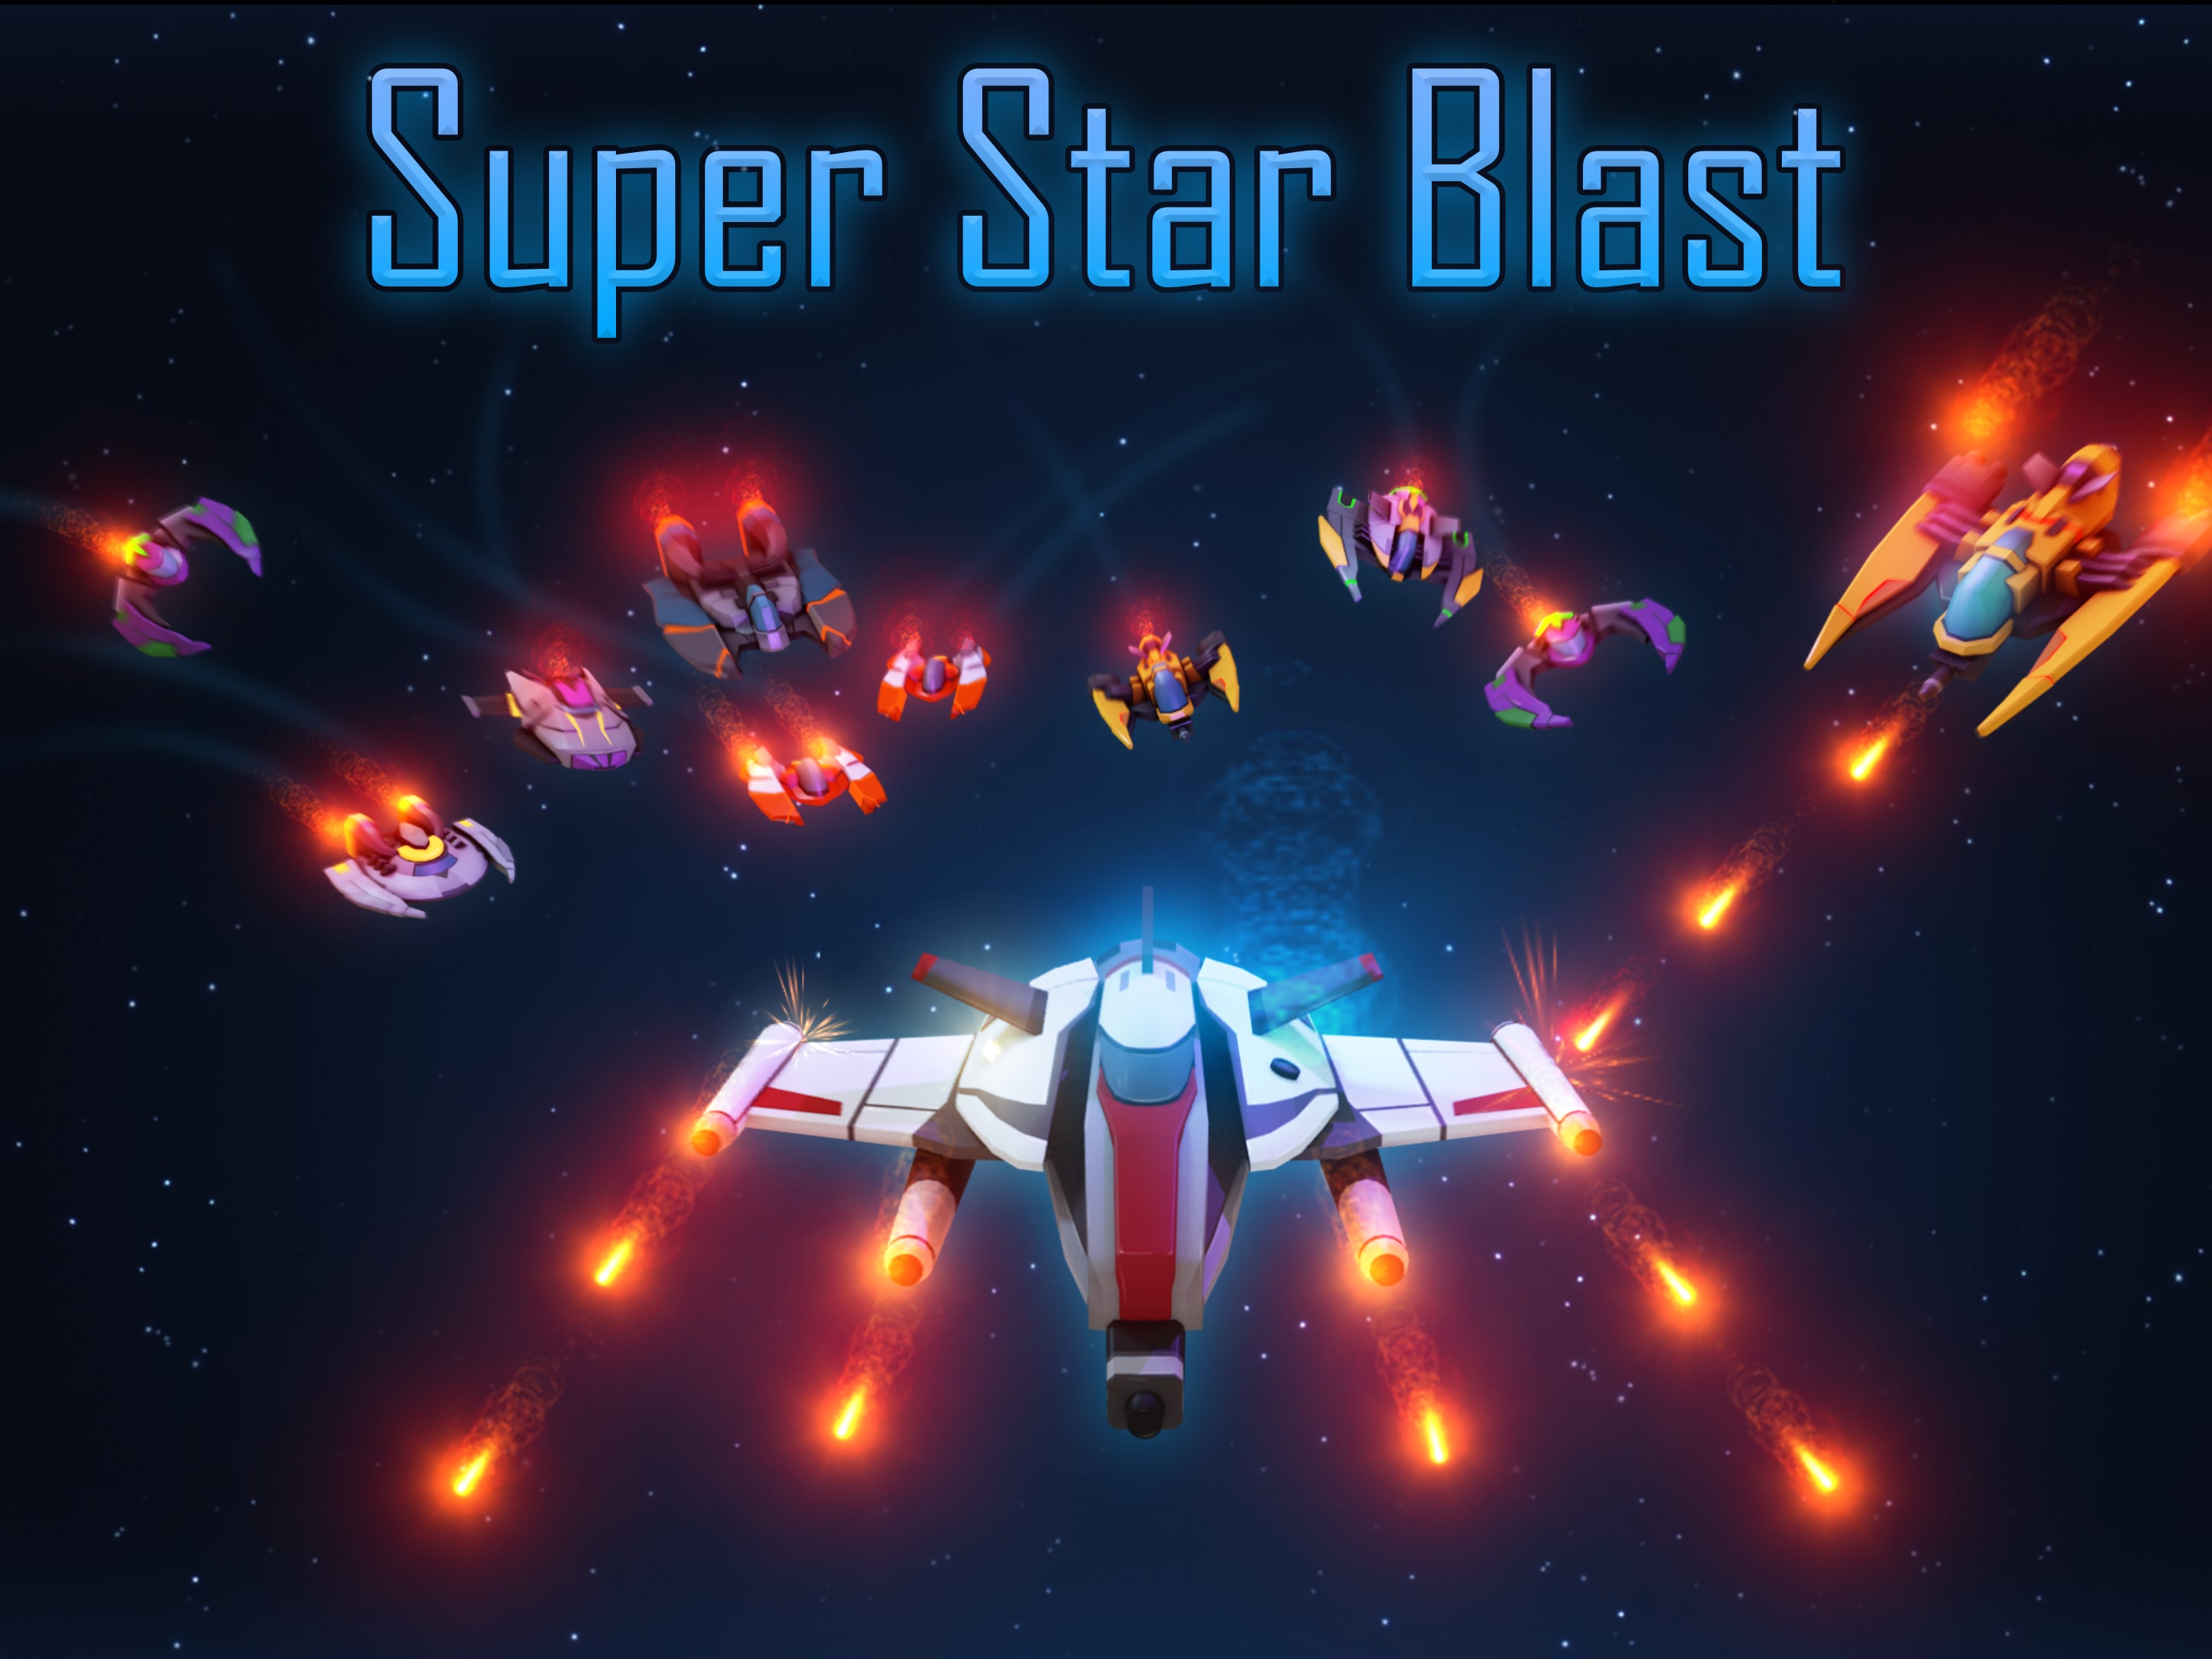 Super Star Blast